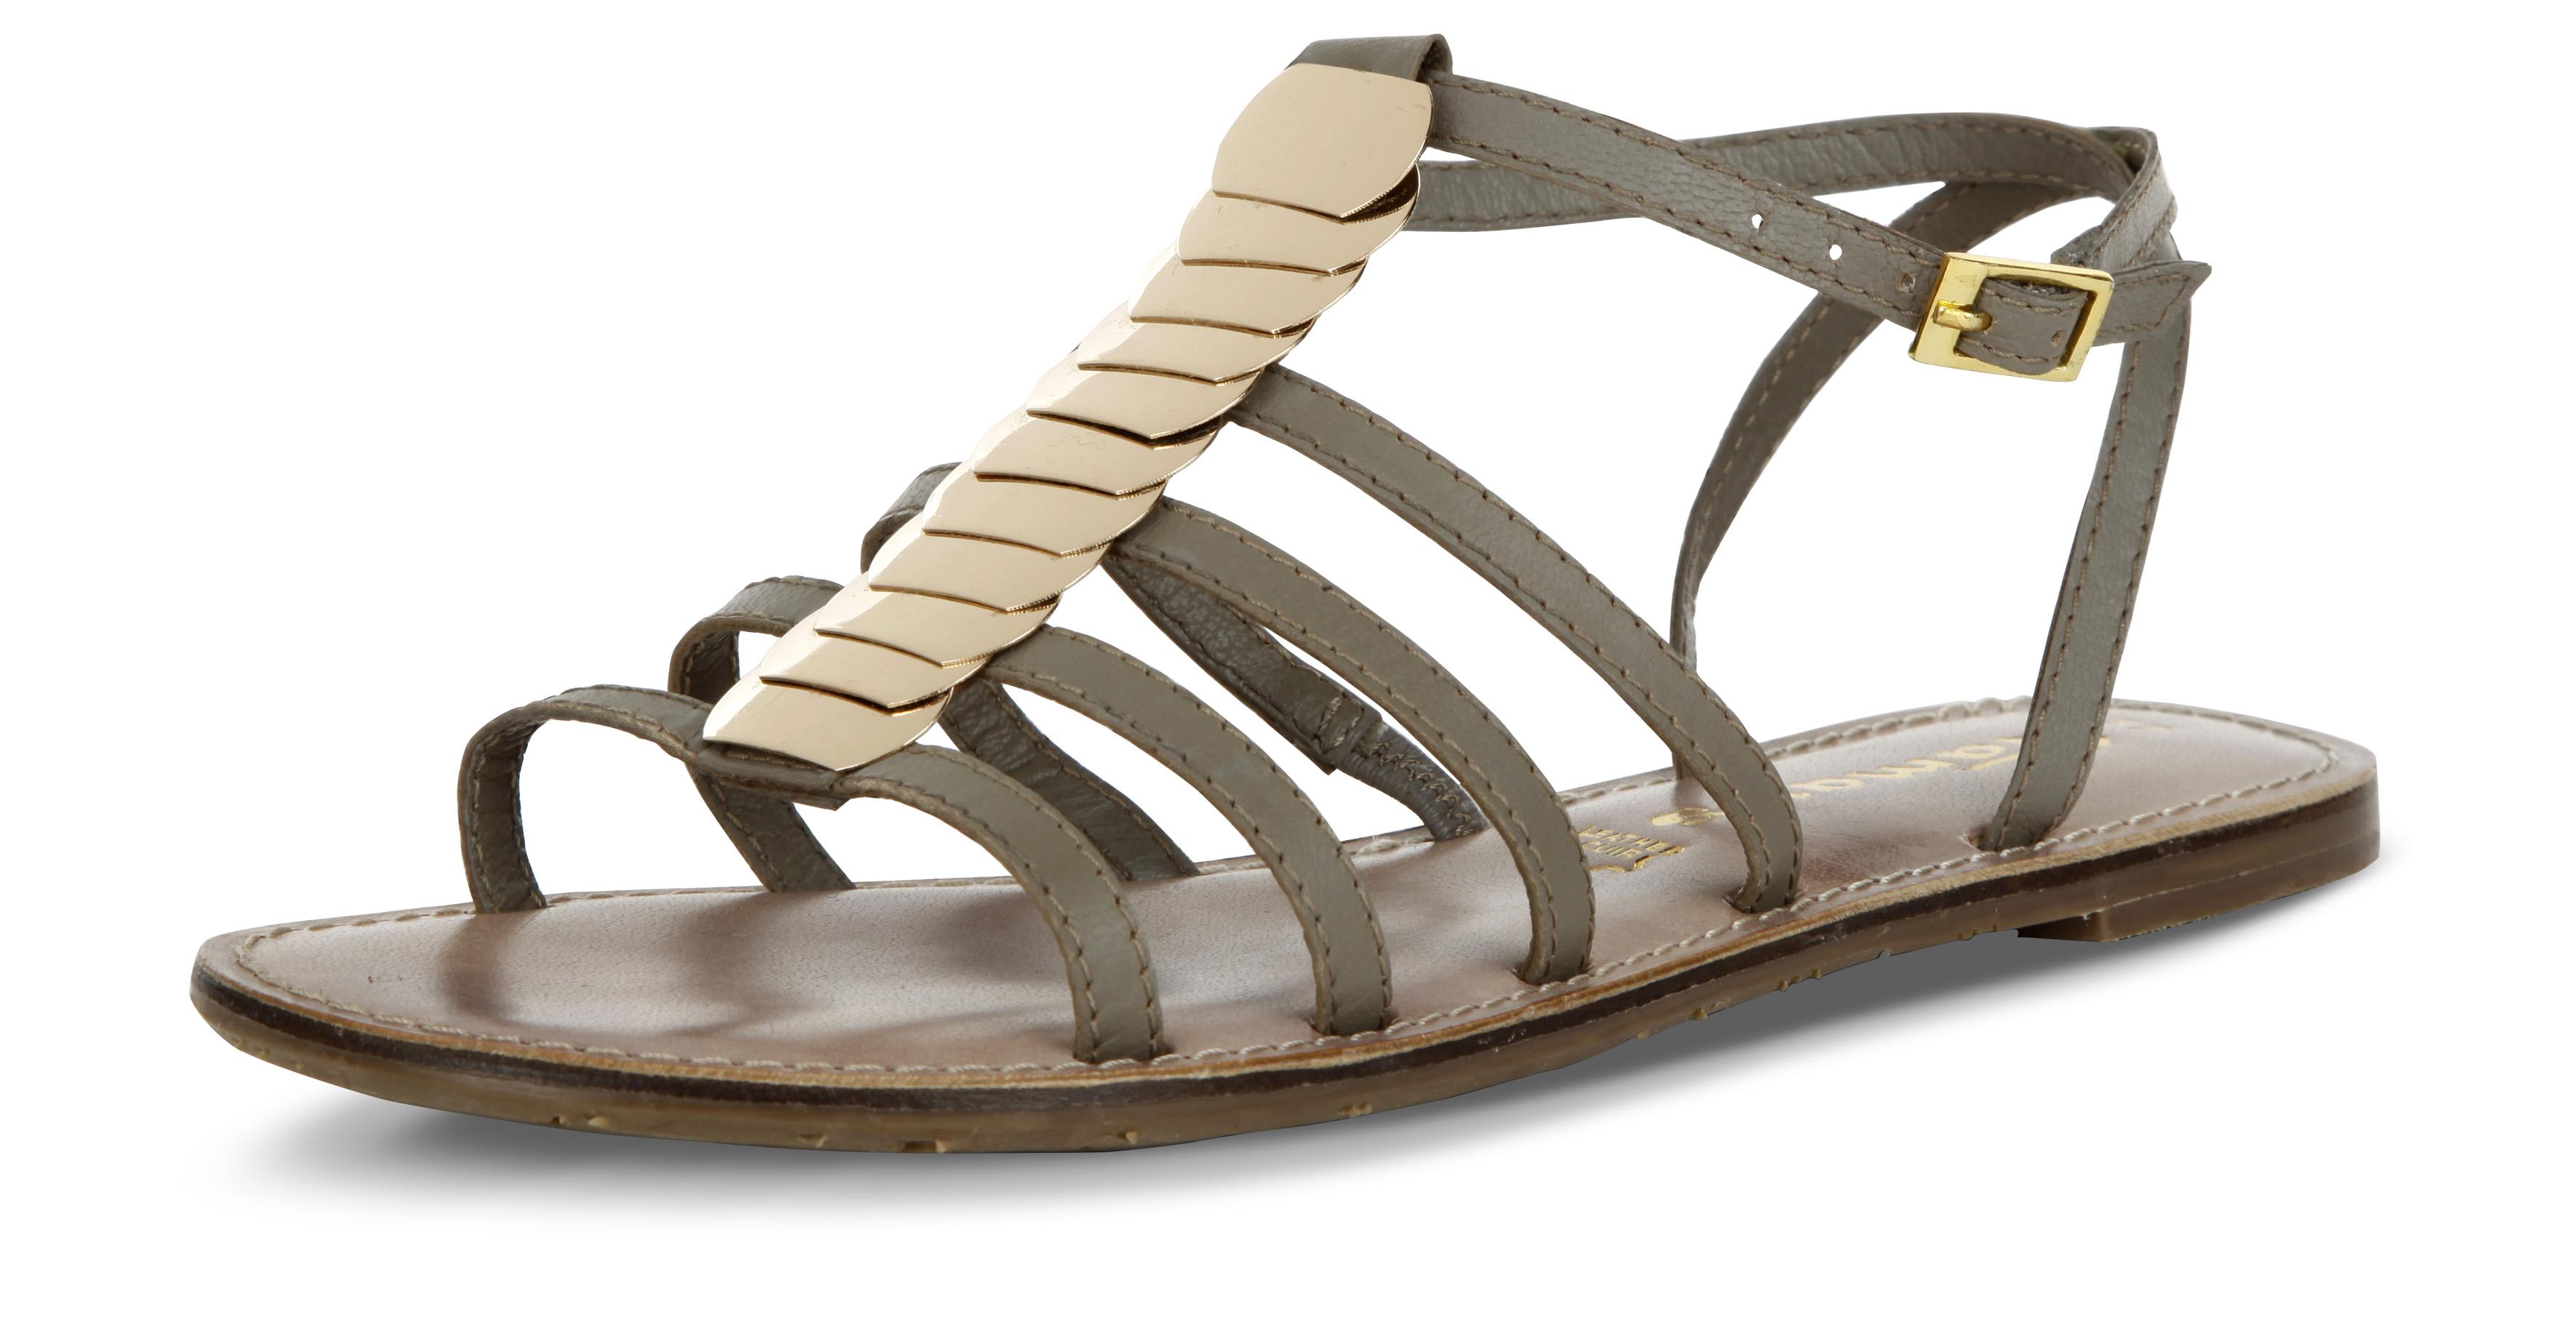 Sandales confortables - Brantano - 49,95€